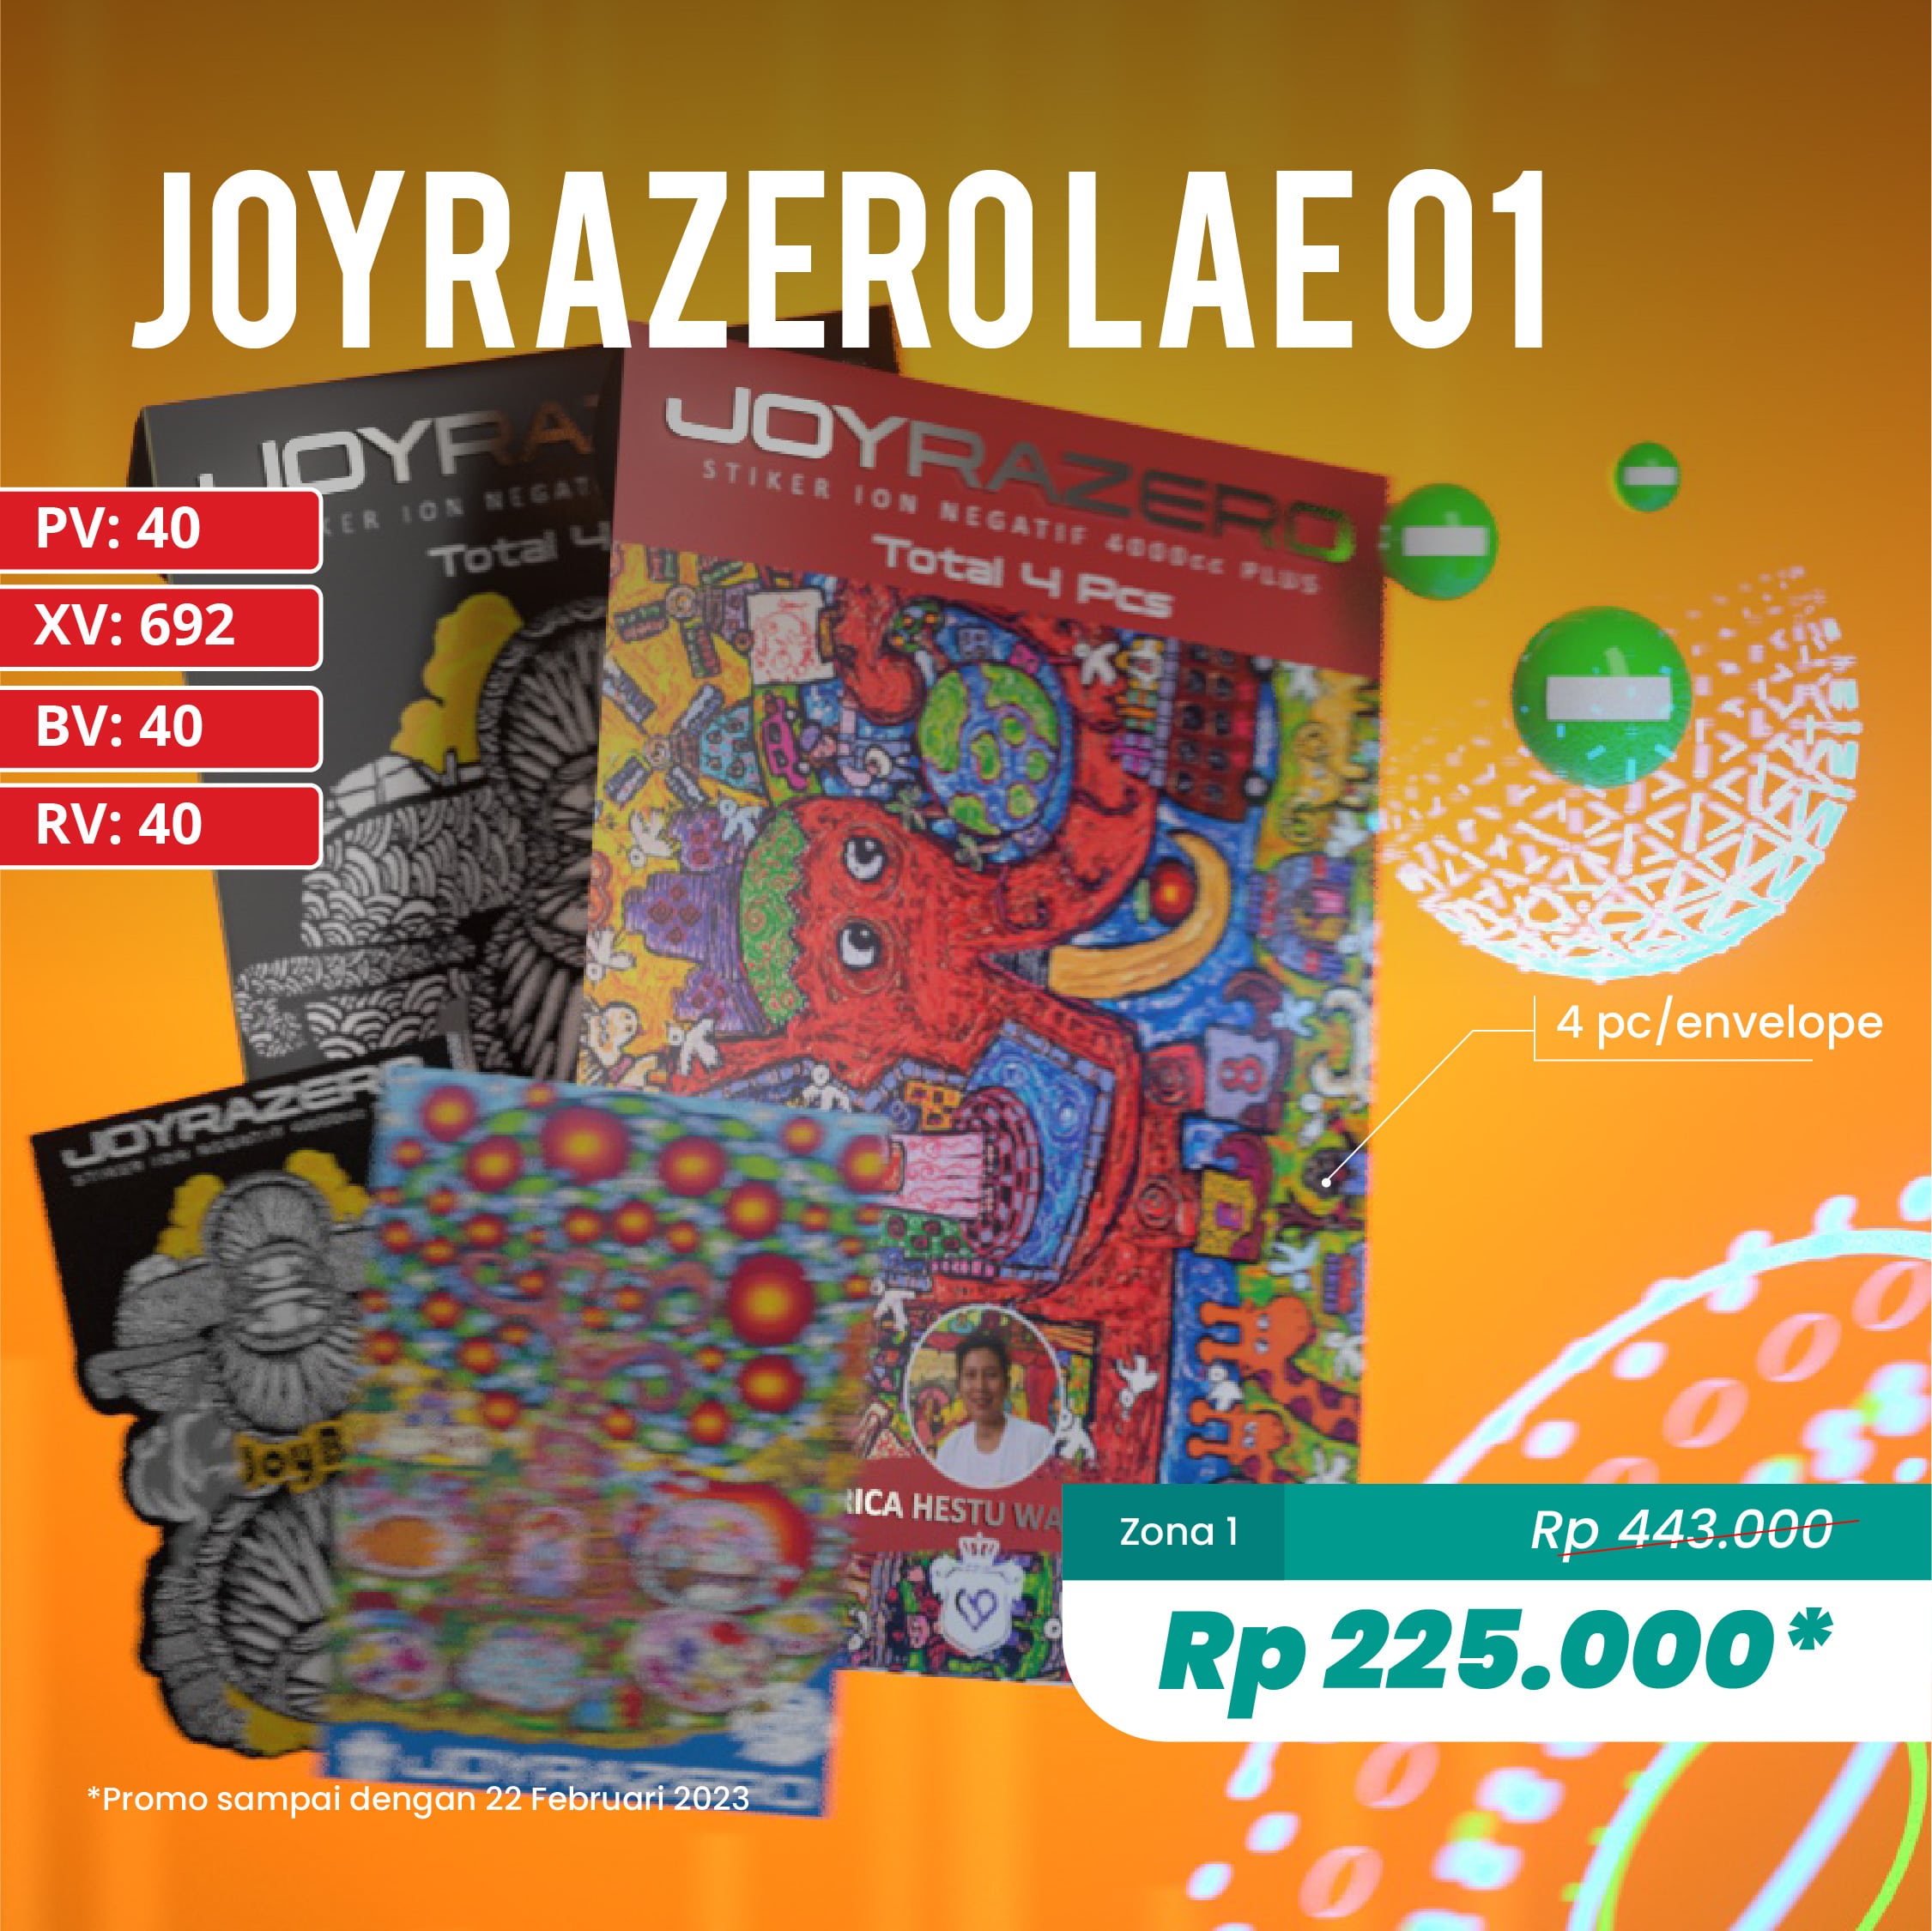 Joyrazero LAE 01 (J35)